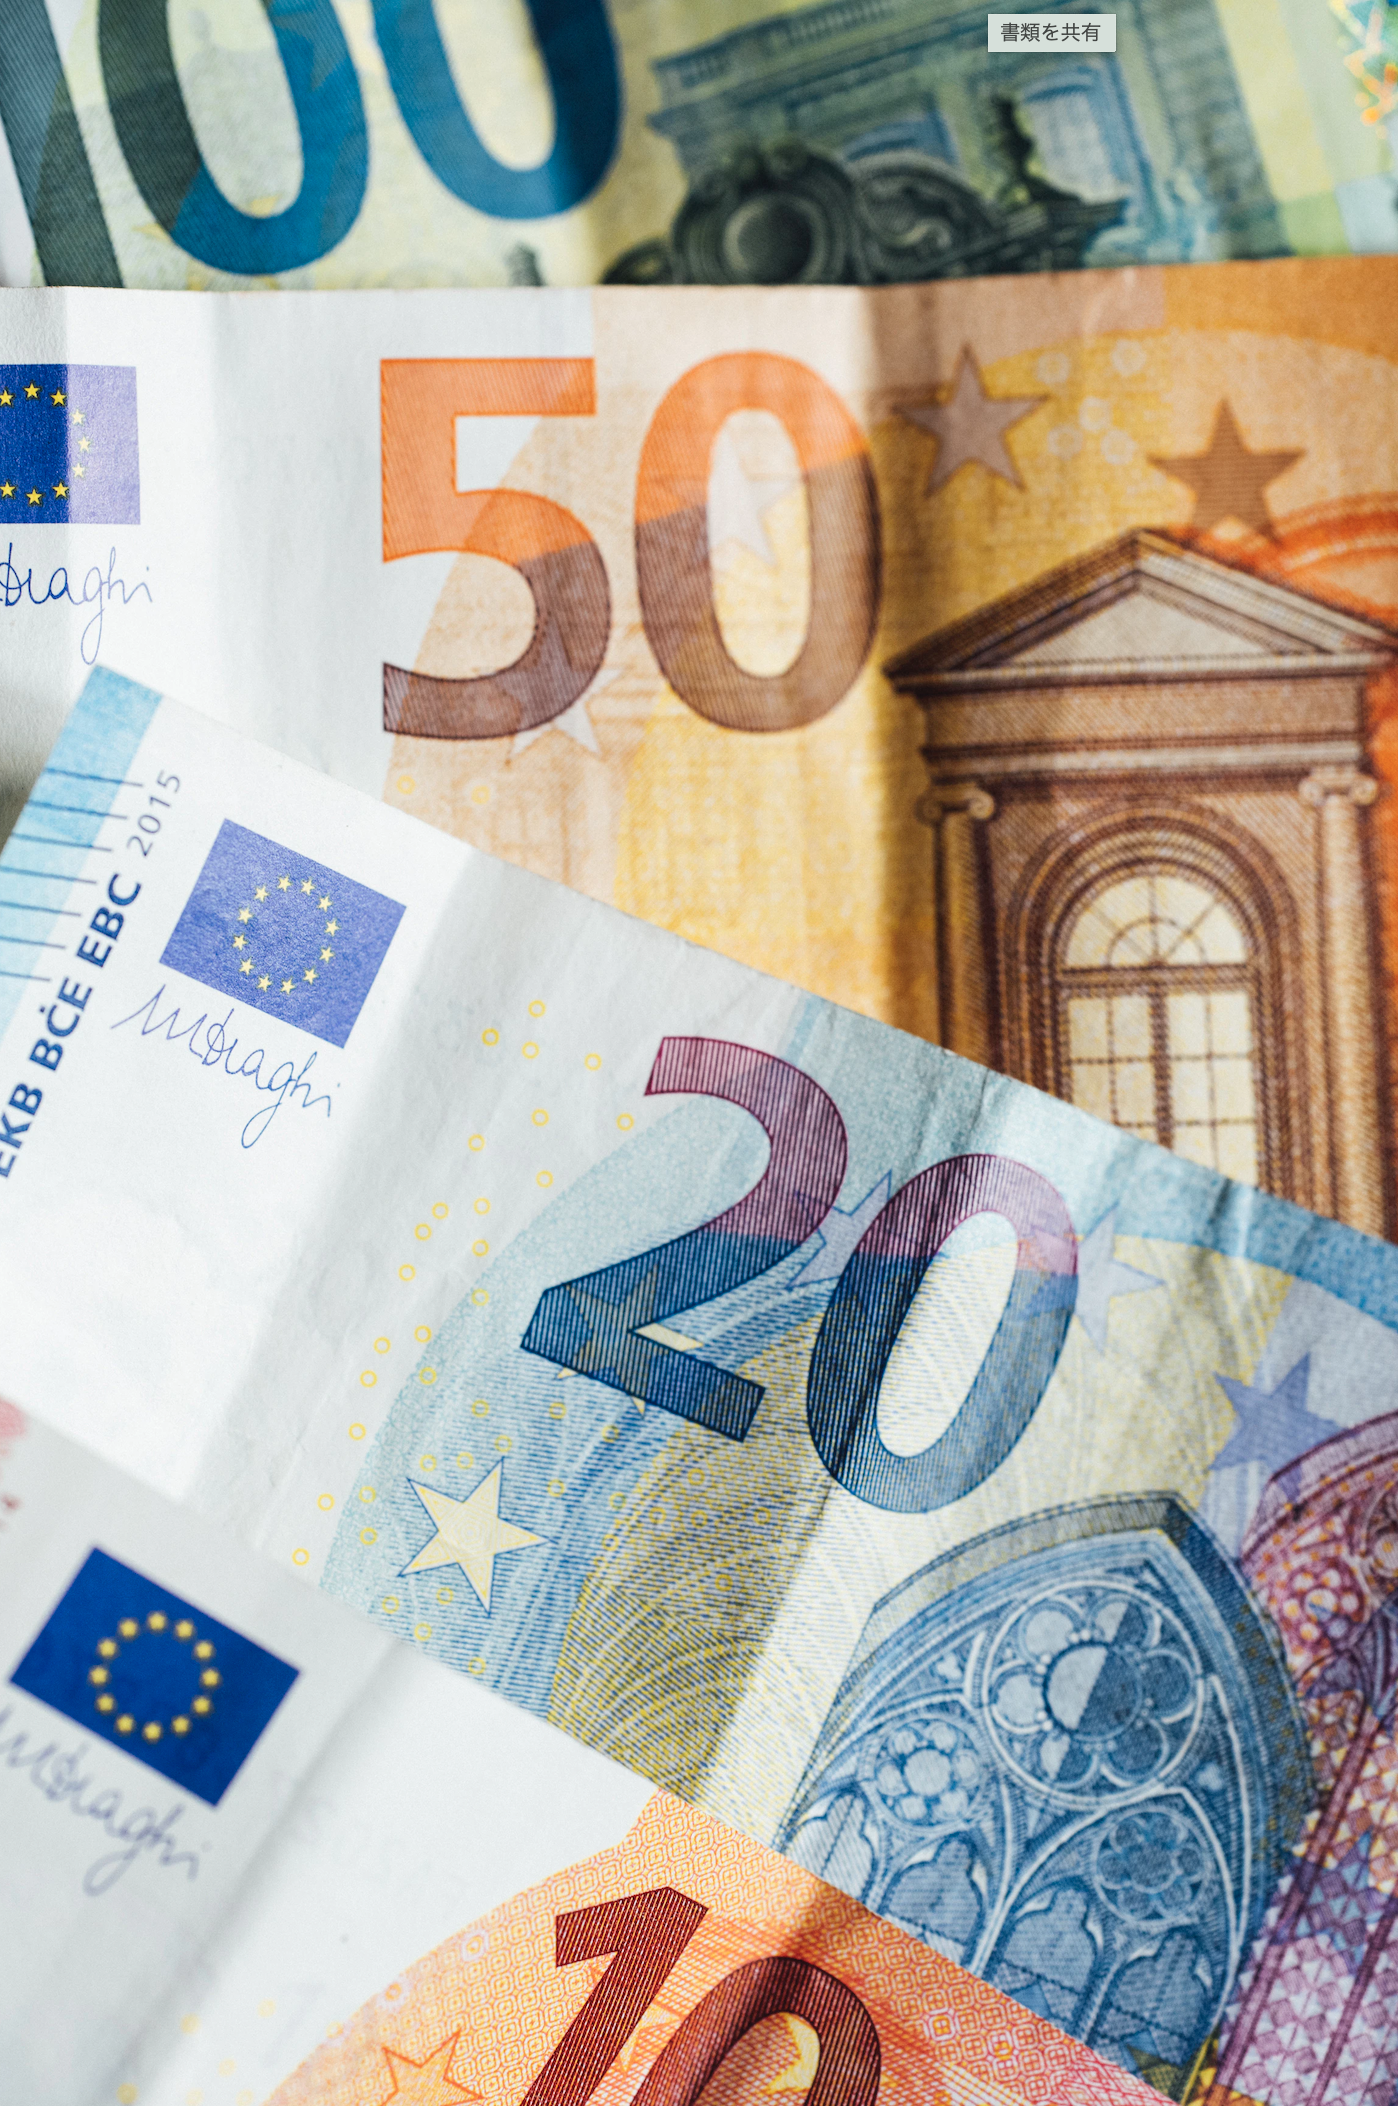 ユーロの現金